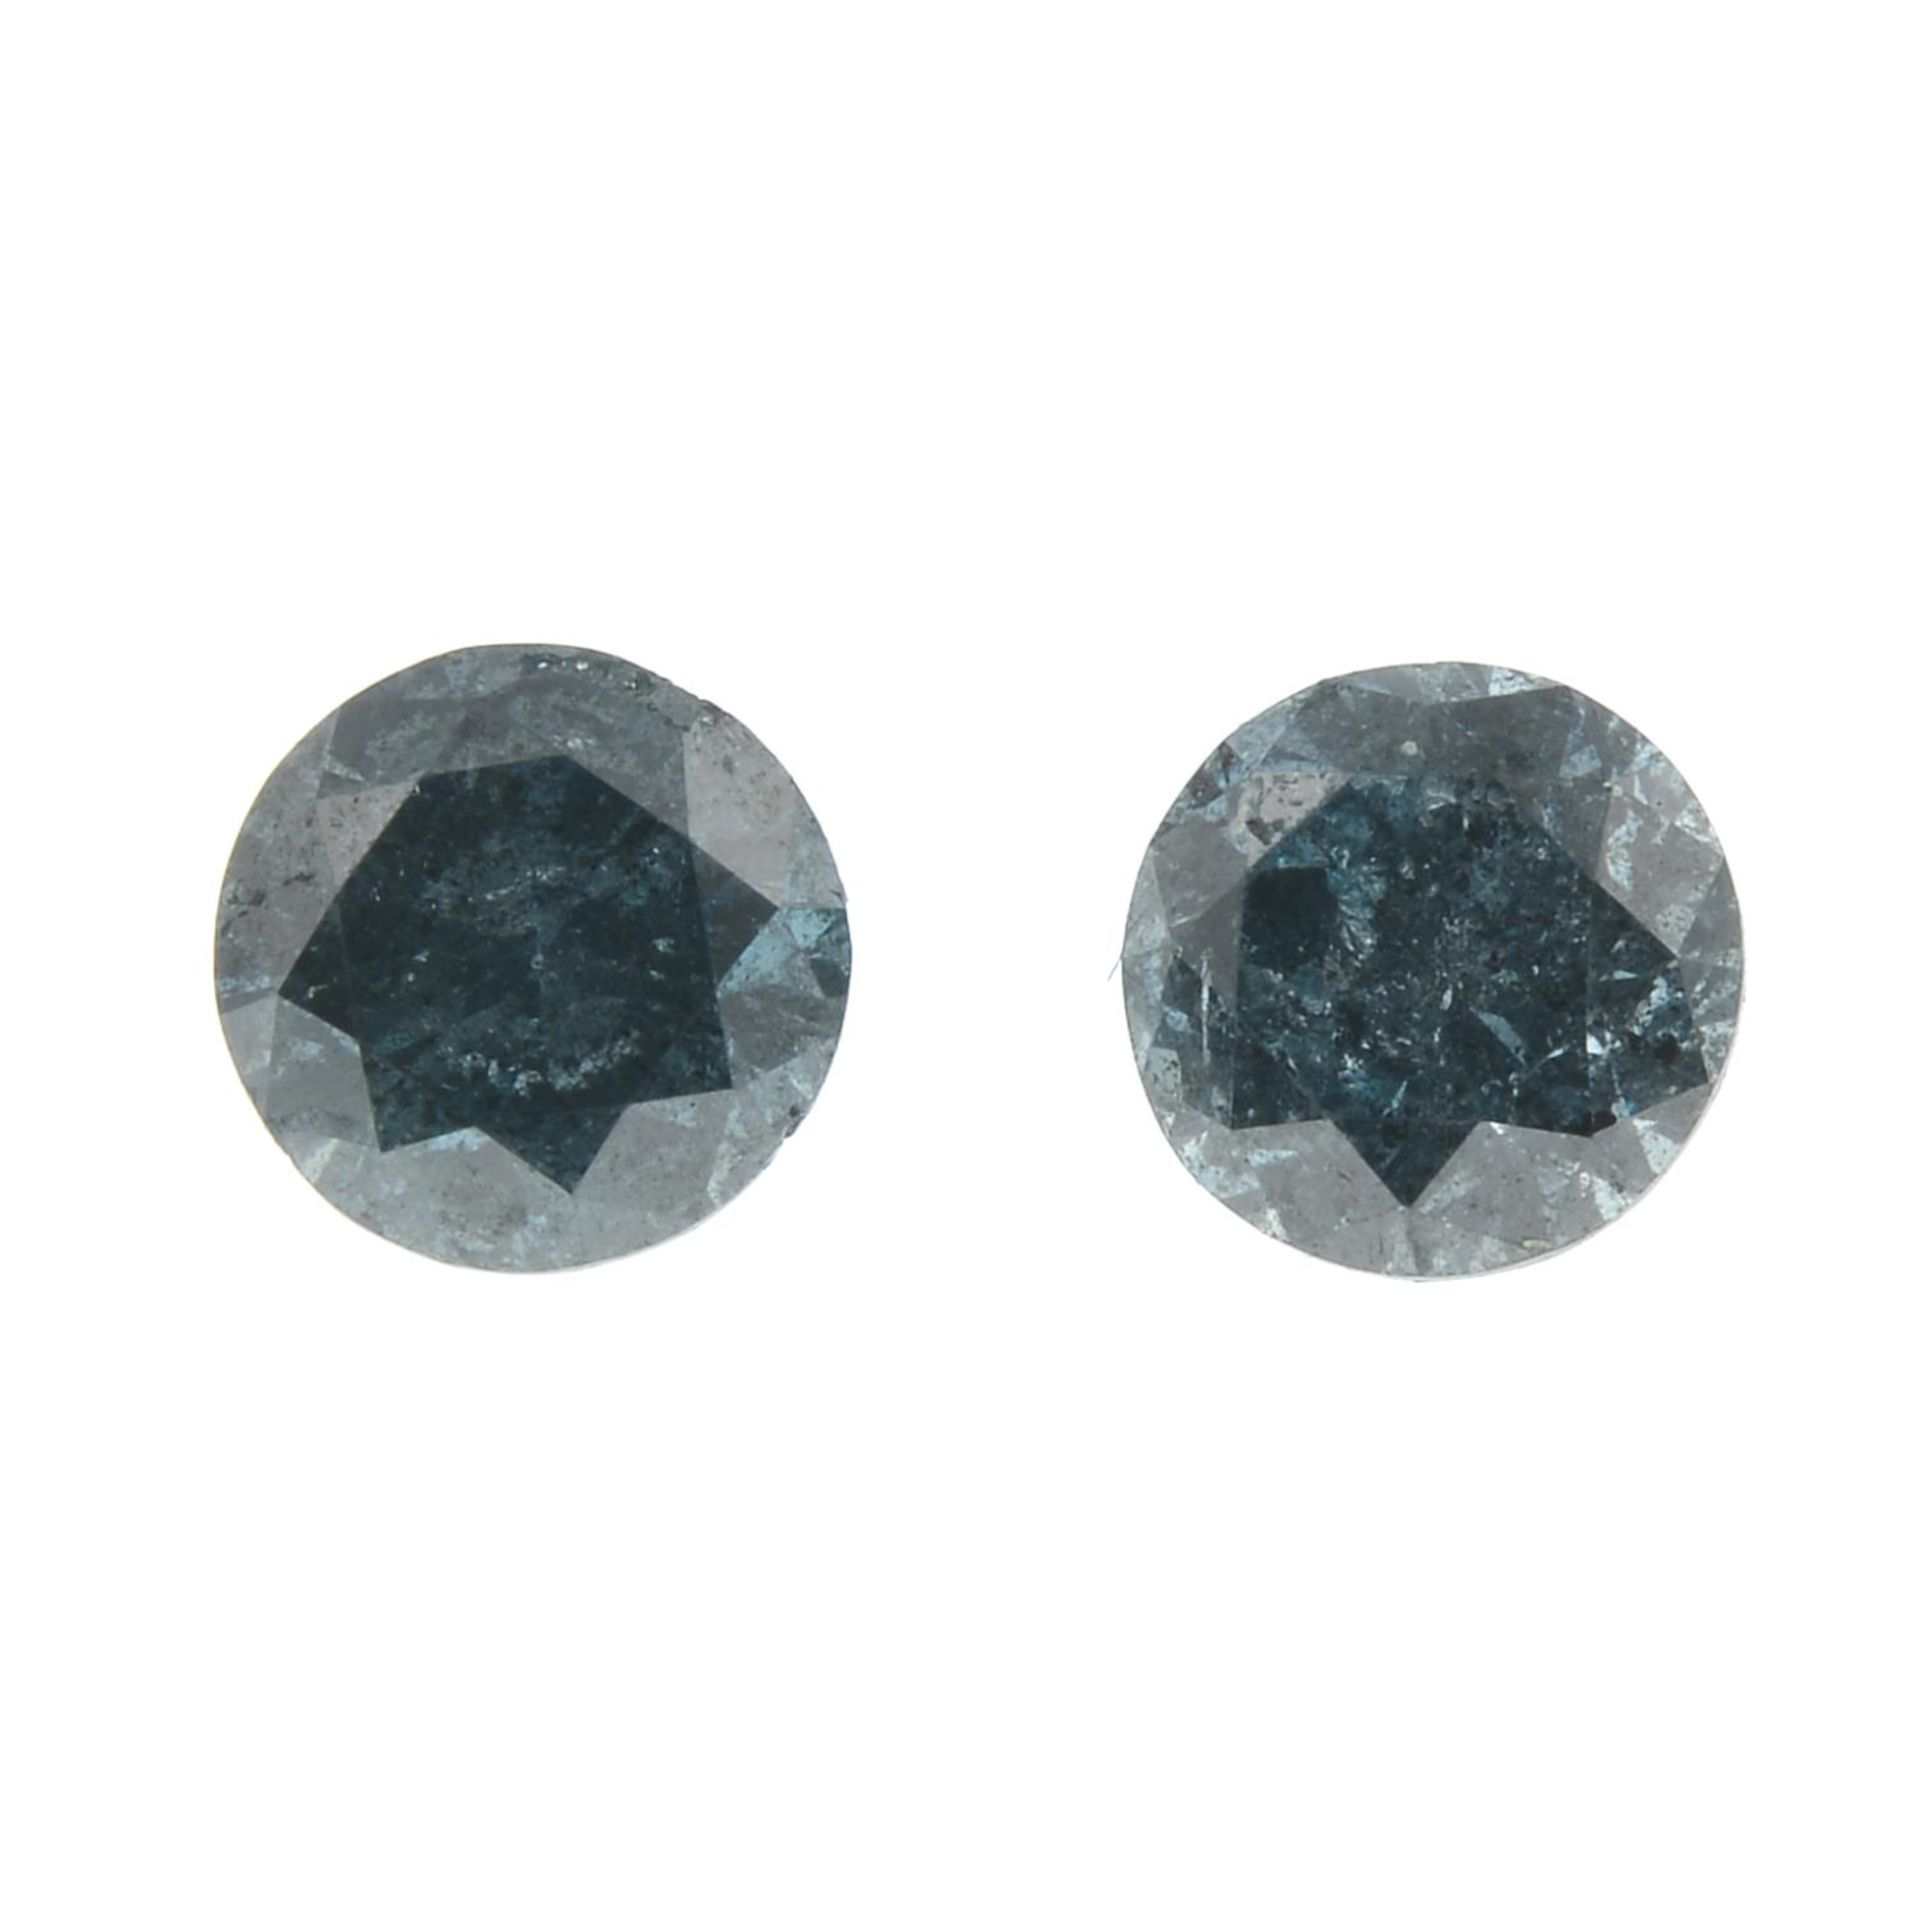 Two brilliant-cut 'blue' diamonds.